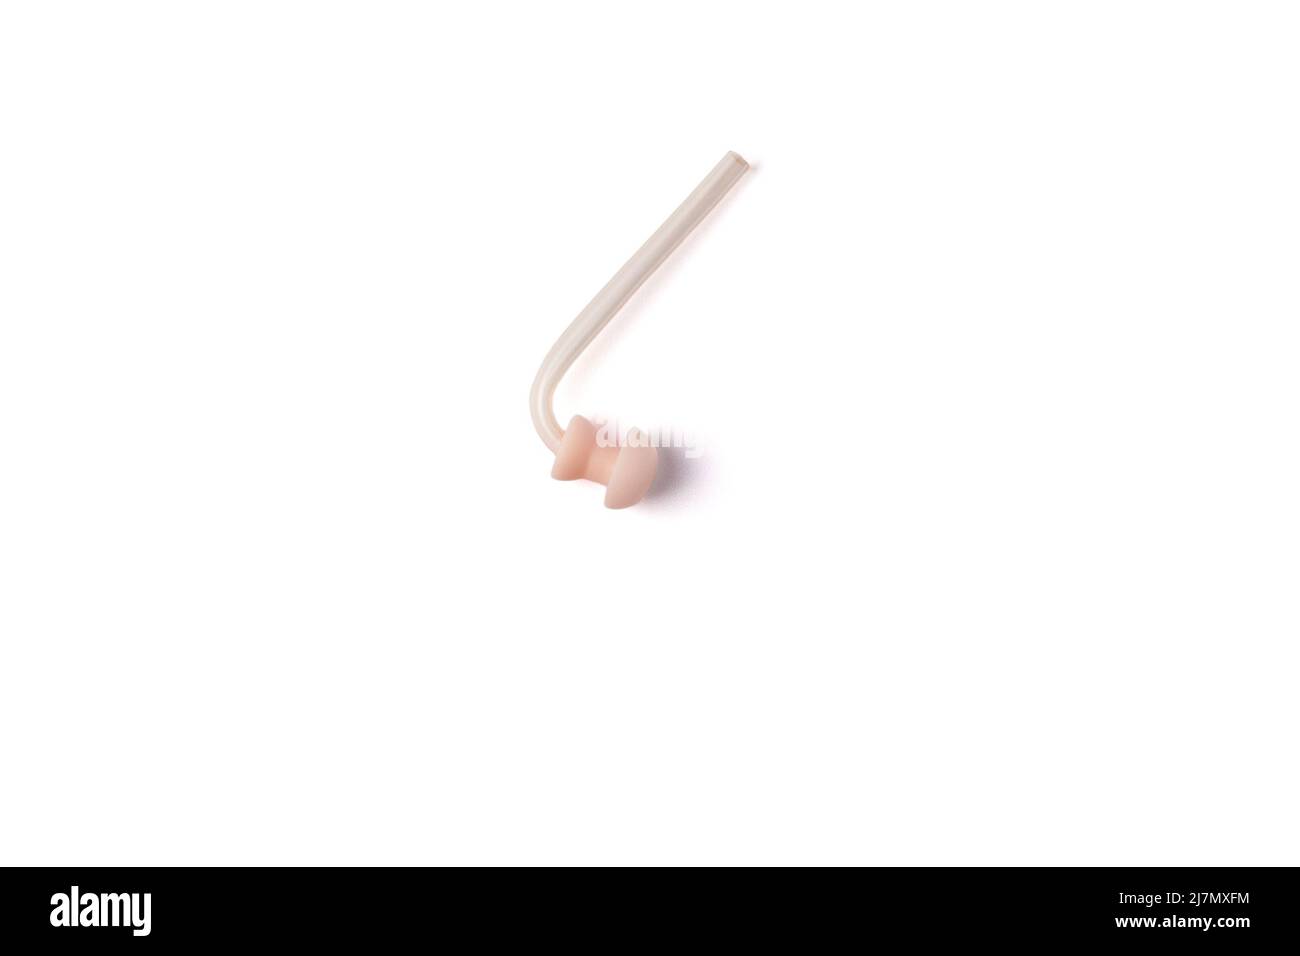 Hörgerätersatz-Ohrmuppel mit Silikonschlauch isoliert auf weißem Hintergrund. Zubehör für Hörgeräte. Draufsicht Stockfoto